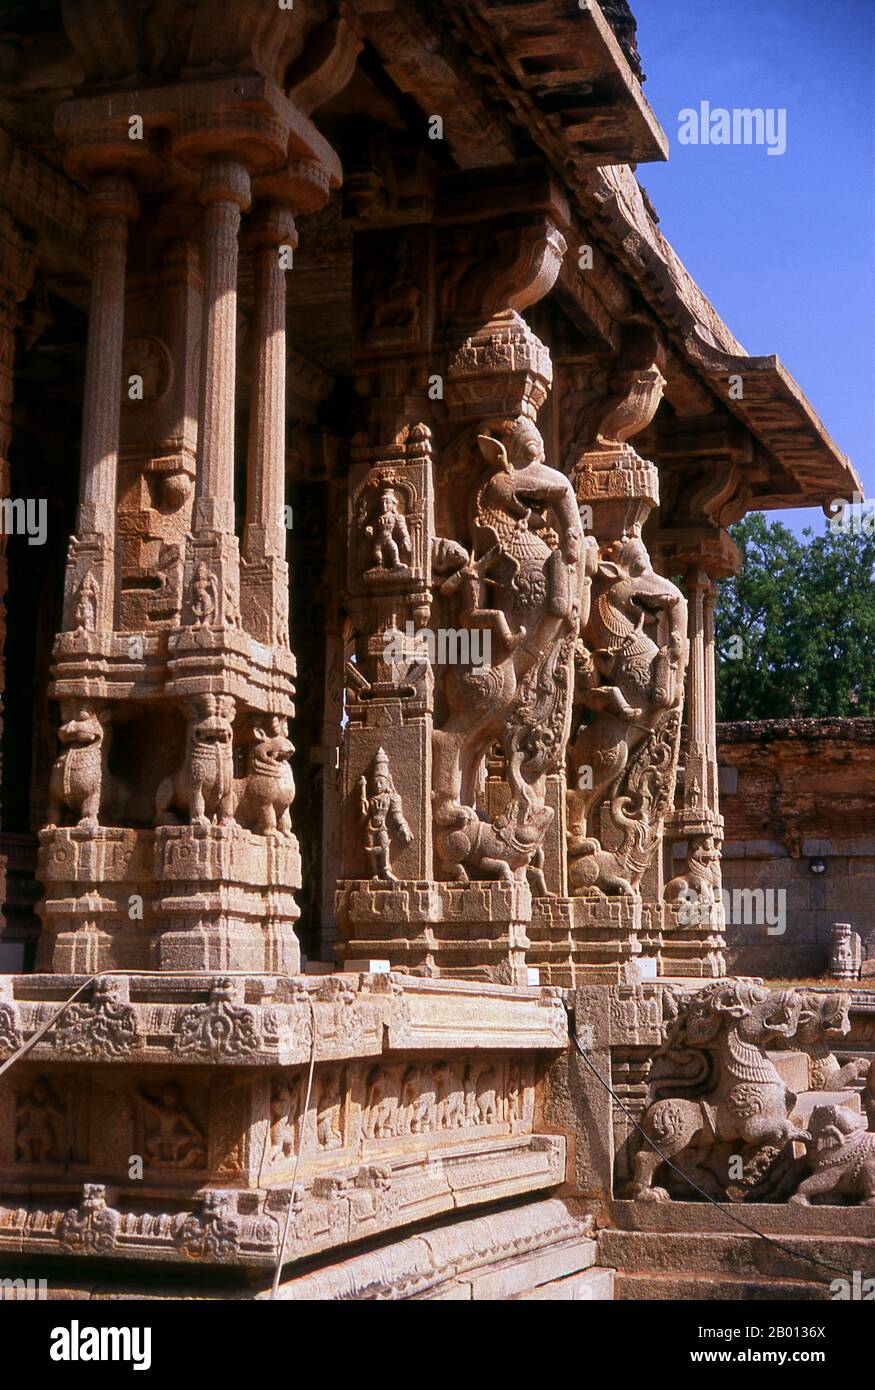 Inde: yalis bondissant (créatures mythiques avec le corps d'un lion et parfois la tête d'un éléphant) ornent le temple de Vitthala, Hampi, Etat de Karnataka. Le temple de Vittala, construit au début du XVIe siècle, est consacré au dieu hindou Vithoba (également connu sous le nom de Vitthala et Panduranga), une incarnation de Vishnu ou de son avatar Krishna. Hampi est un village dans le nord de l'état de Karnataka. Il est situé dans les ruines de Vijayanagara, l'ancienne capitale de l'empire de Vijayanagara. Avant la ville de Vijayanagara, il continue d'être un important centre religieux, abritant le temple de Virupaksha. Banque D'Images